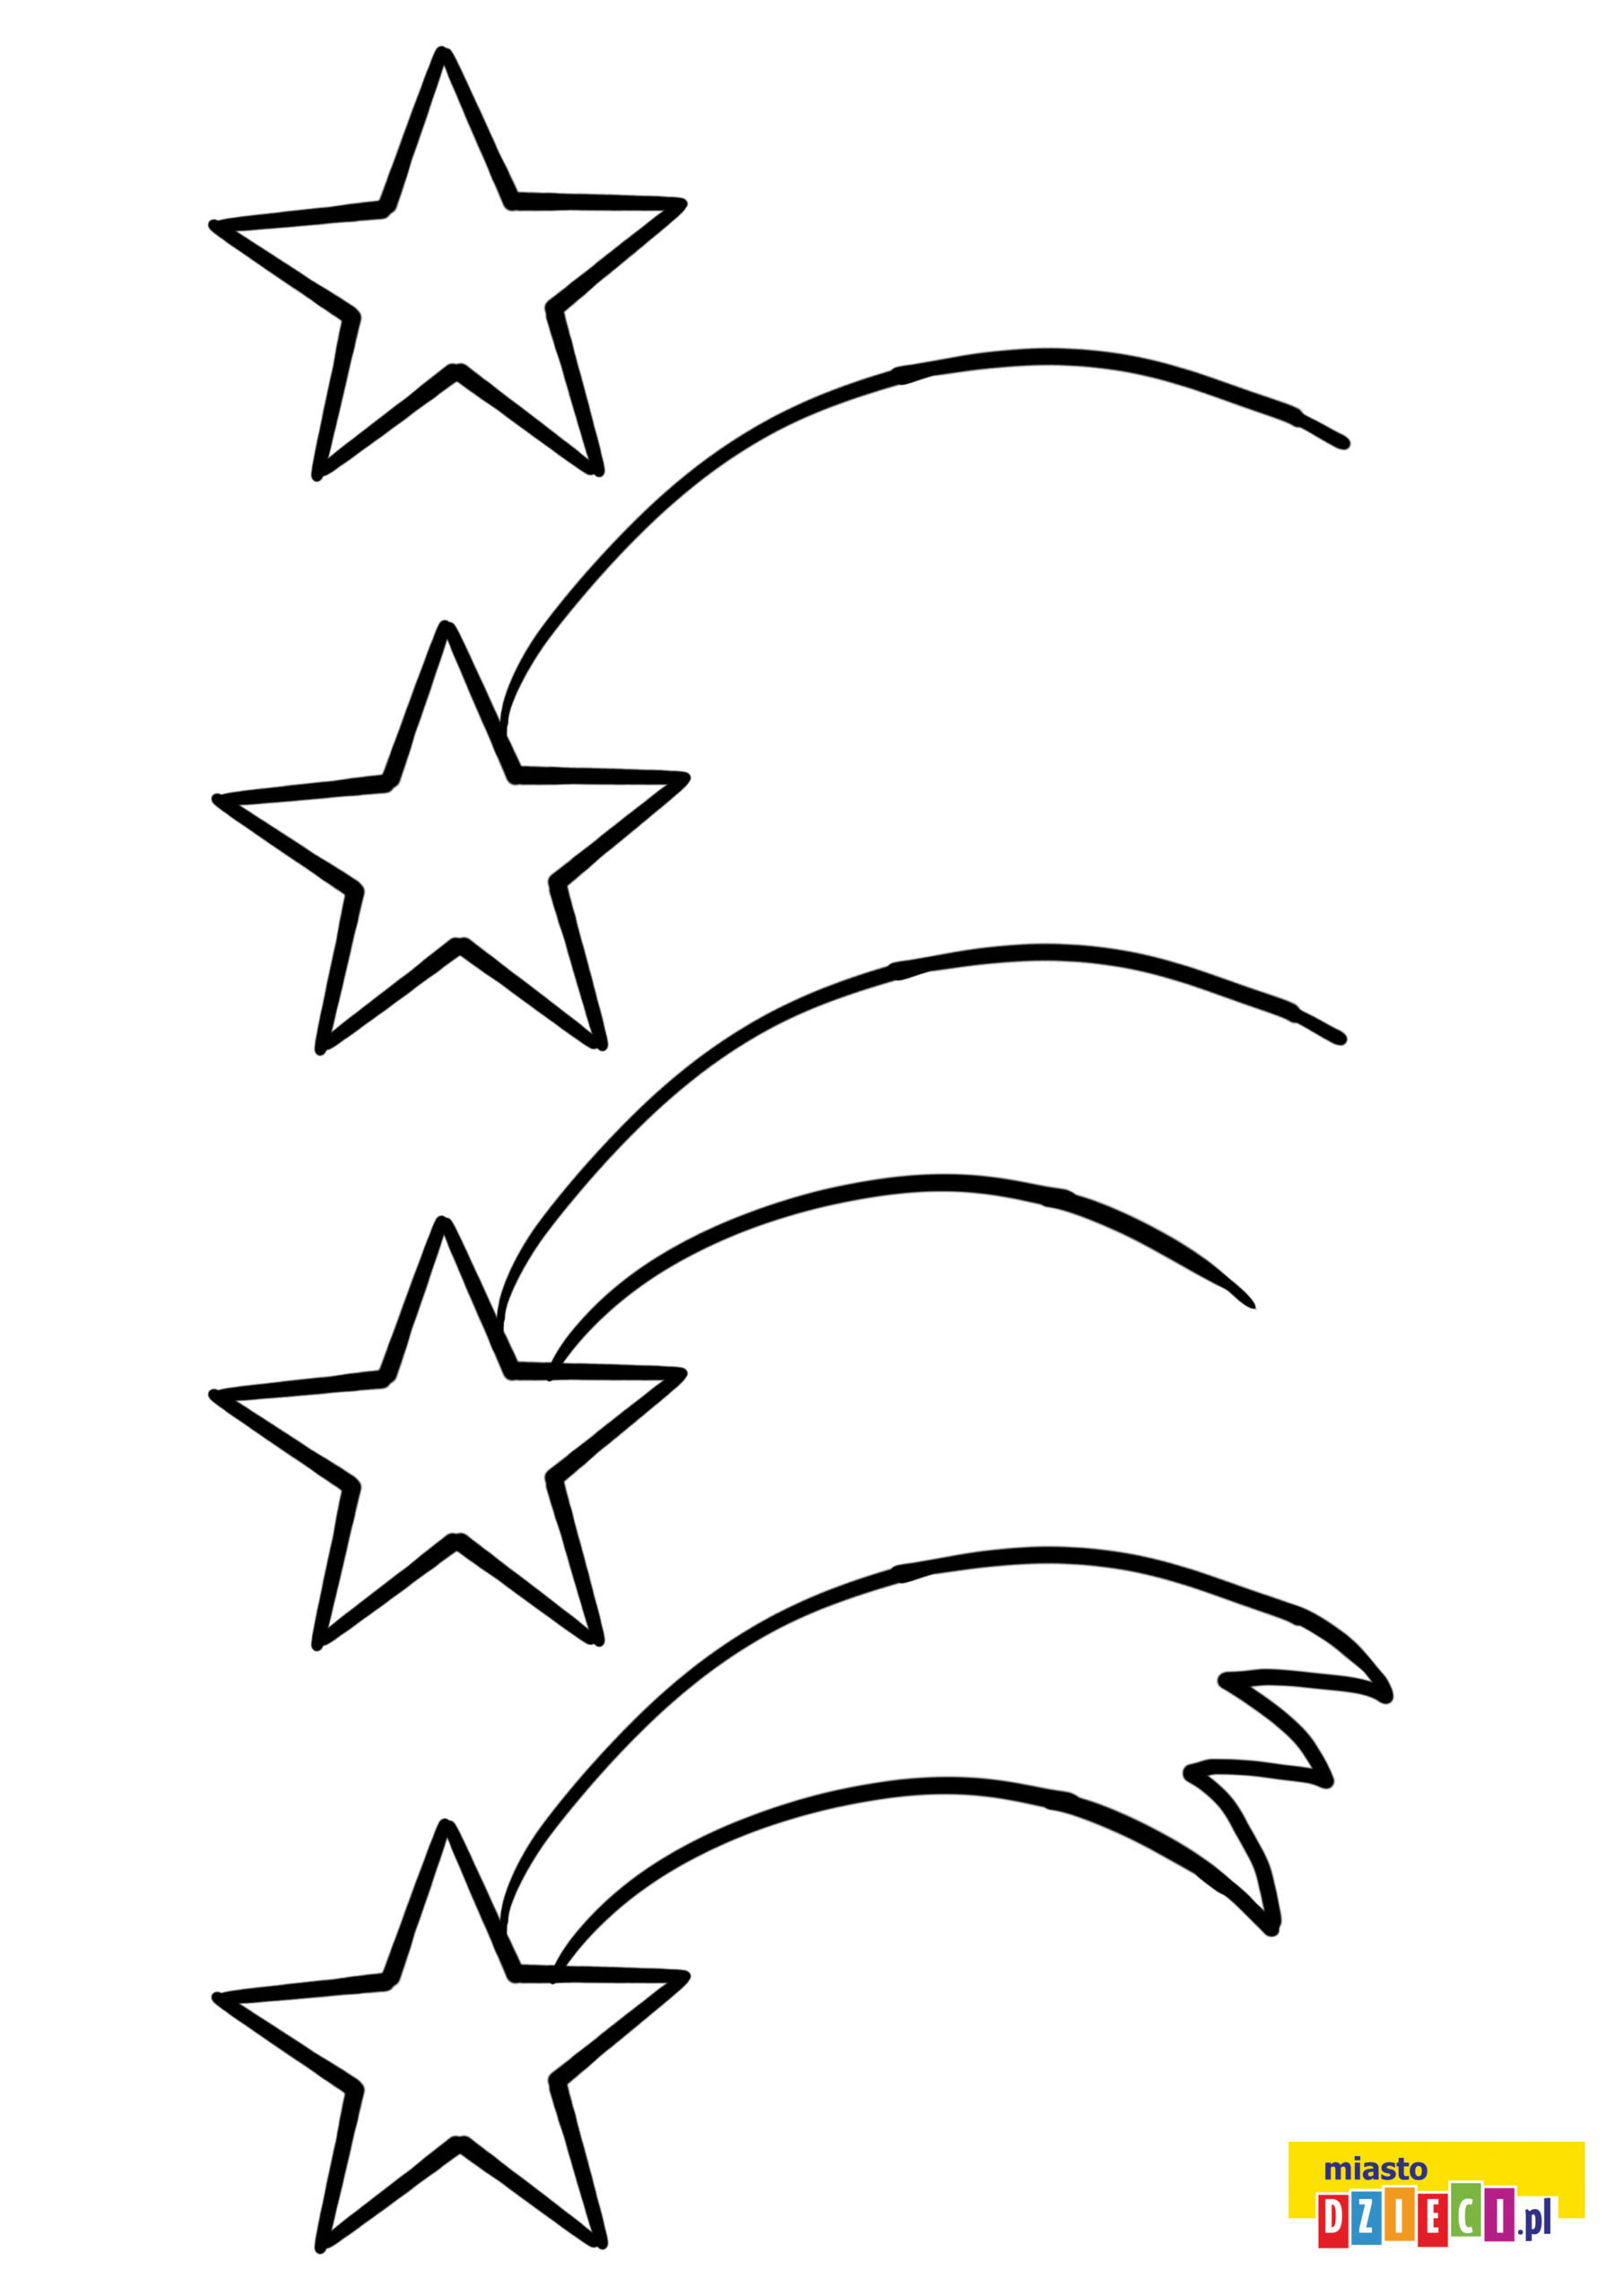 Jak narysować gwiazdę betlejemską. Szablony rysowania na Boże Narodzenie do druku